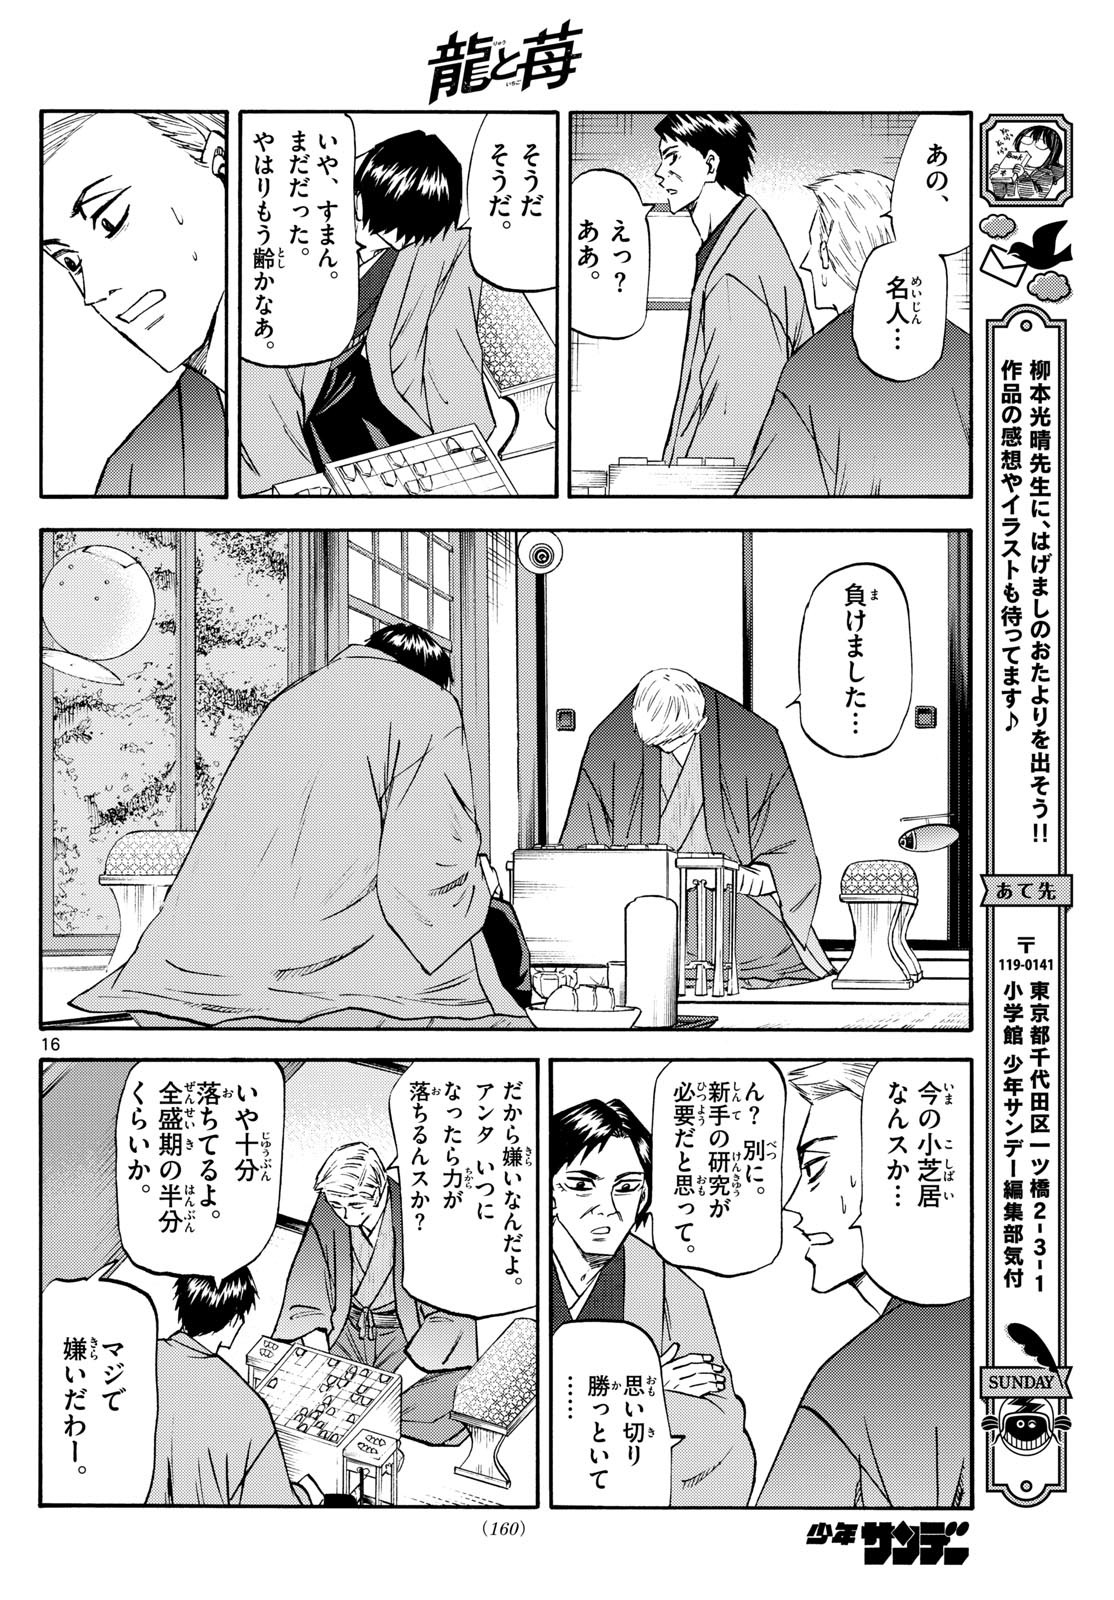 Ryu-to-Ichigo - Chapter 195 - Page 16